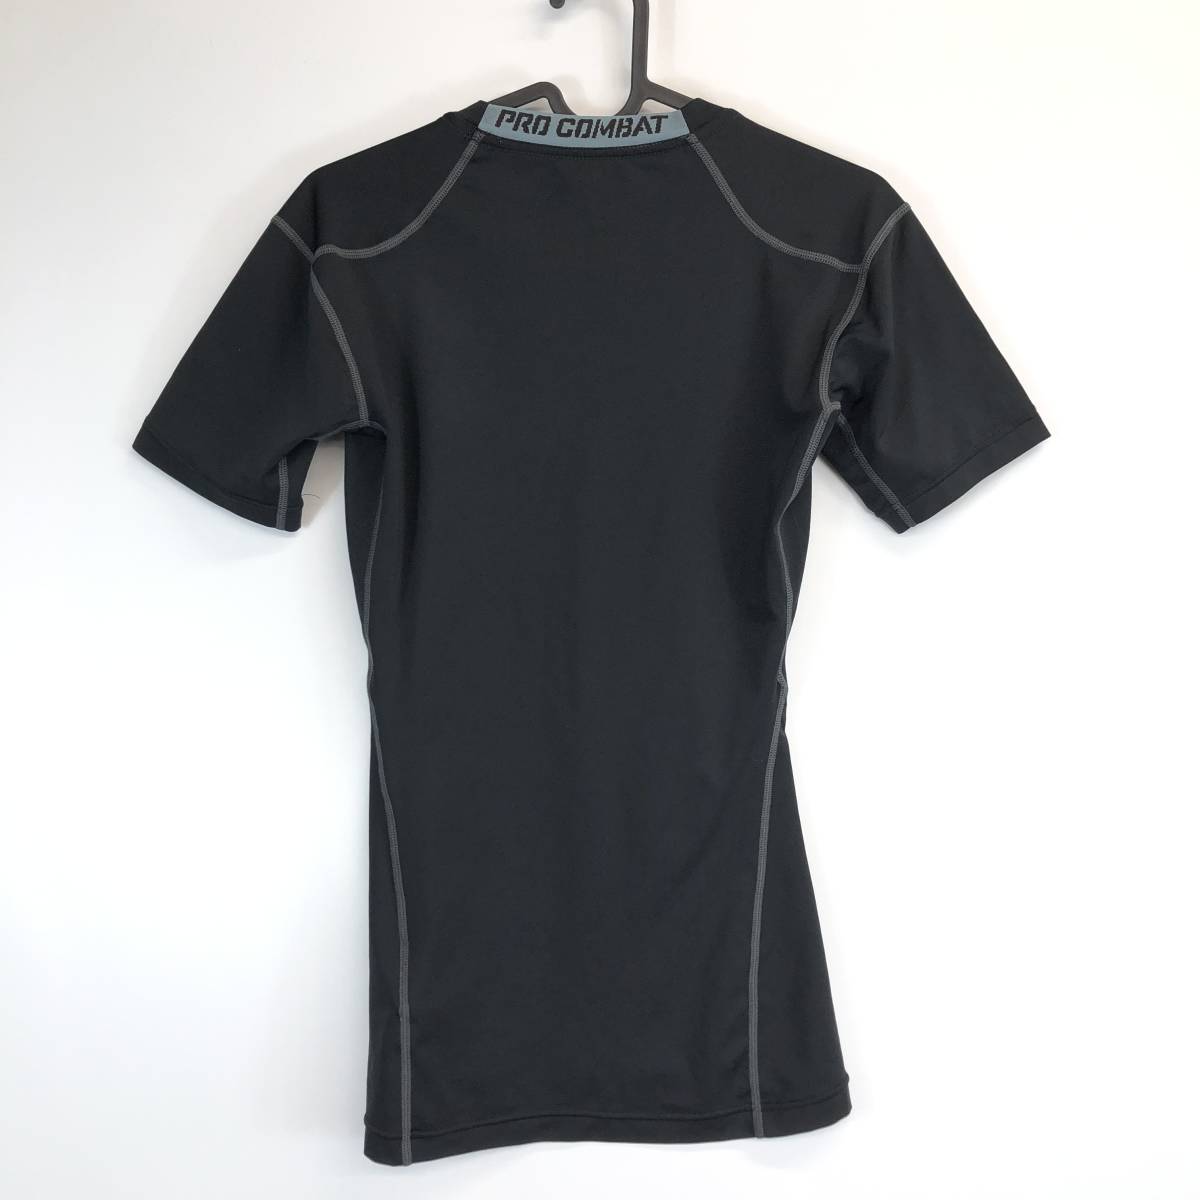 ナイキプロコンバット NIKE PRO COMBAT インナーコンプレッションシャツ 半袖 ブラック Mサイズ 449830